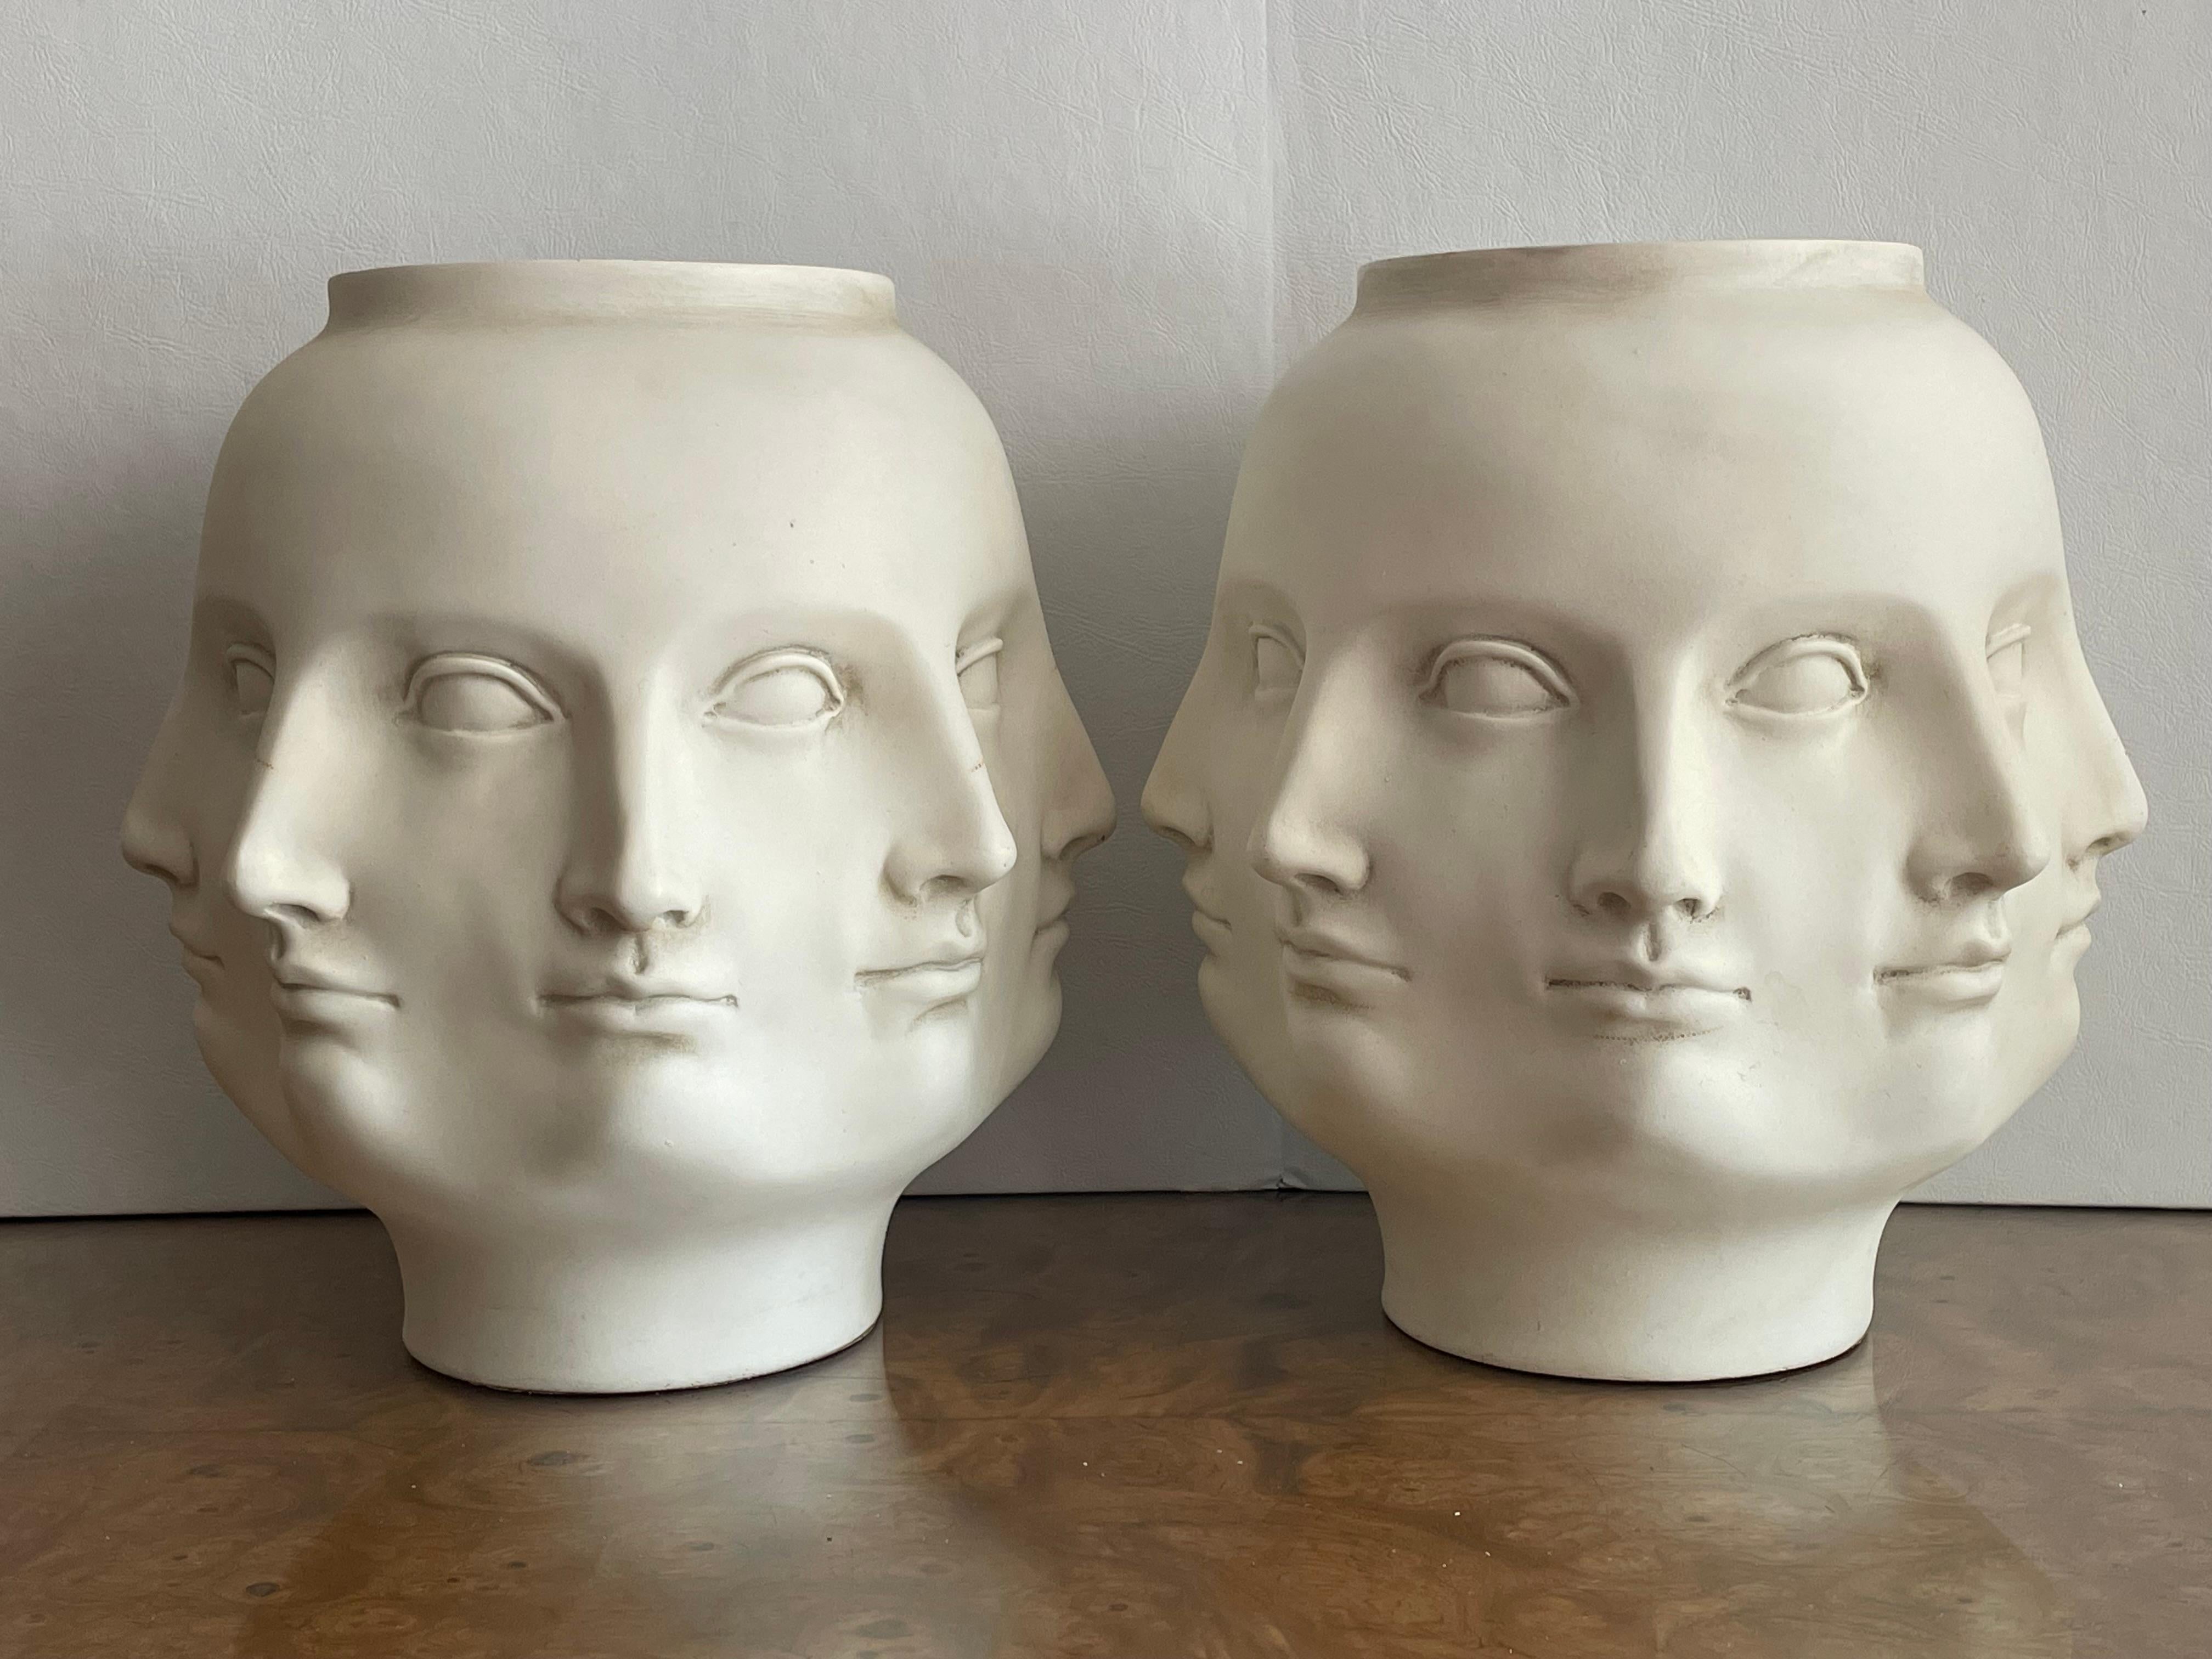 Paar Vasen TMS Inc. mit mehreren Gesichtern 
VITRUVIANISCHE COLLECTION'S
Jedes künstlerische Design drückt die Harmonisierung der Beziehungen zwischen den Körperteilen aus, die sich in Schönheit manifestieren.
Seit Jahrhunderten haben Künstler den